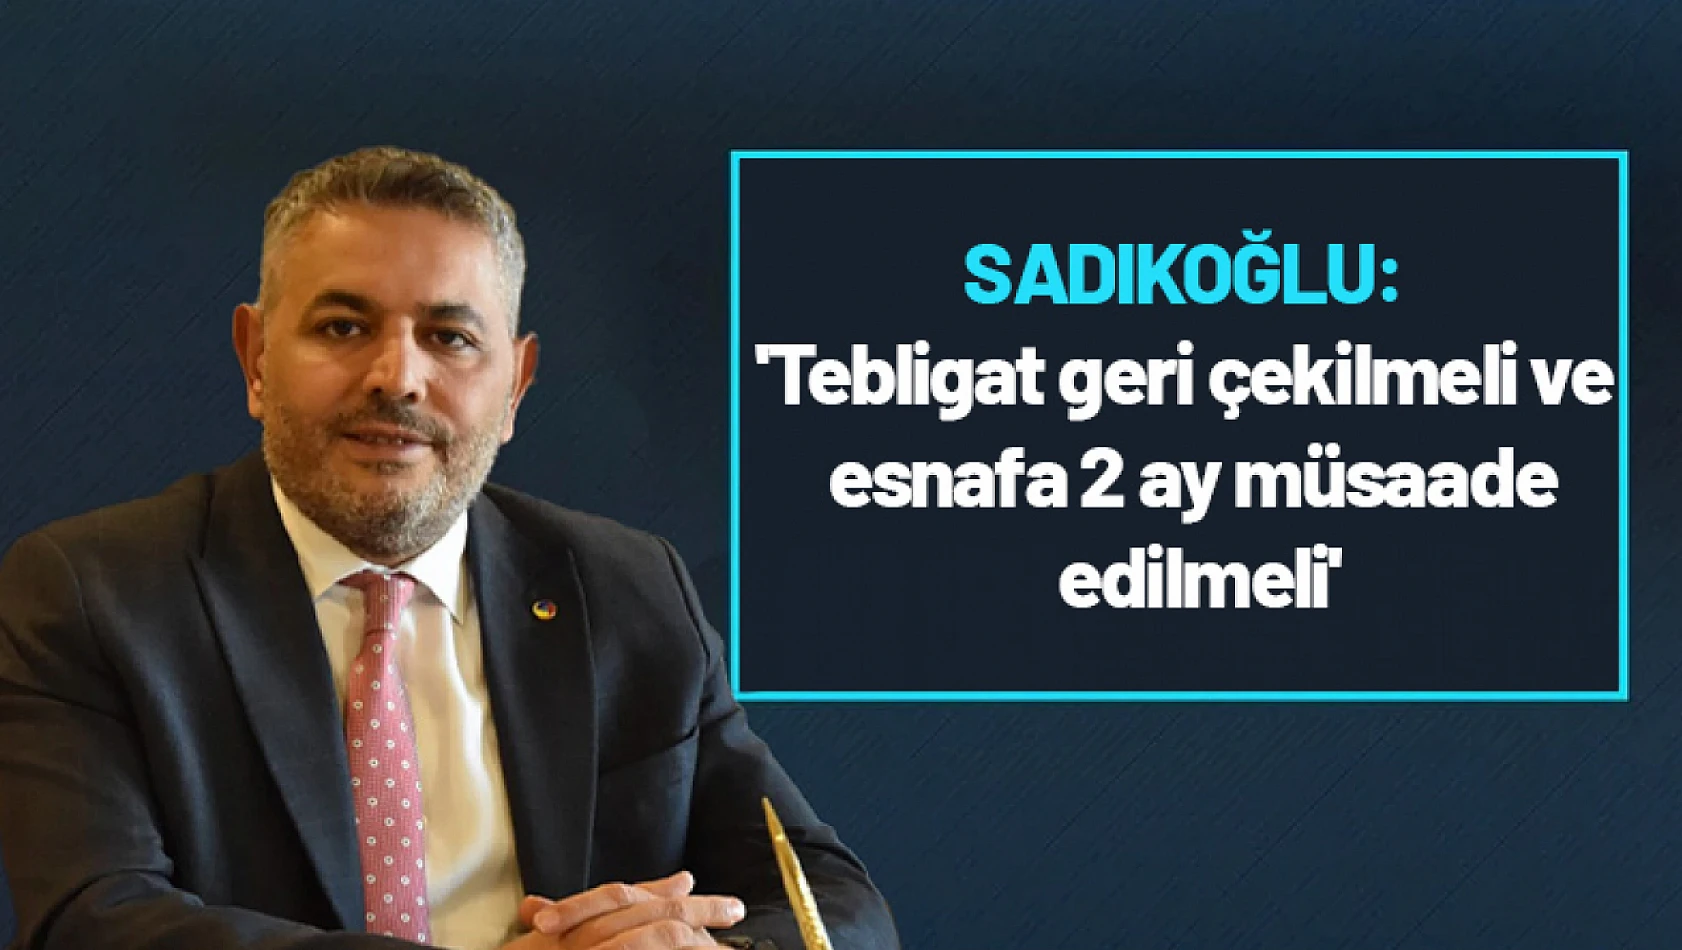 Sadıkoğlu: 'Tebligat geri çekilmeli ve esnafa 2 ay müsaade edilmeli'